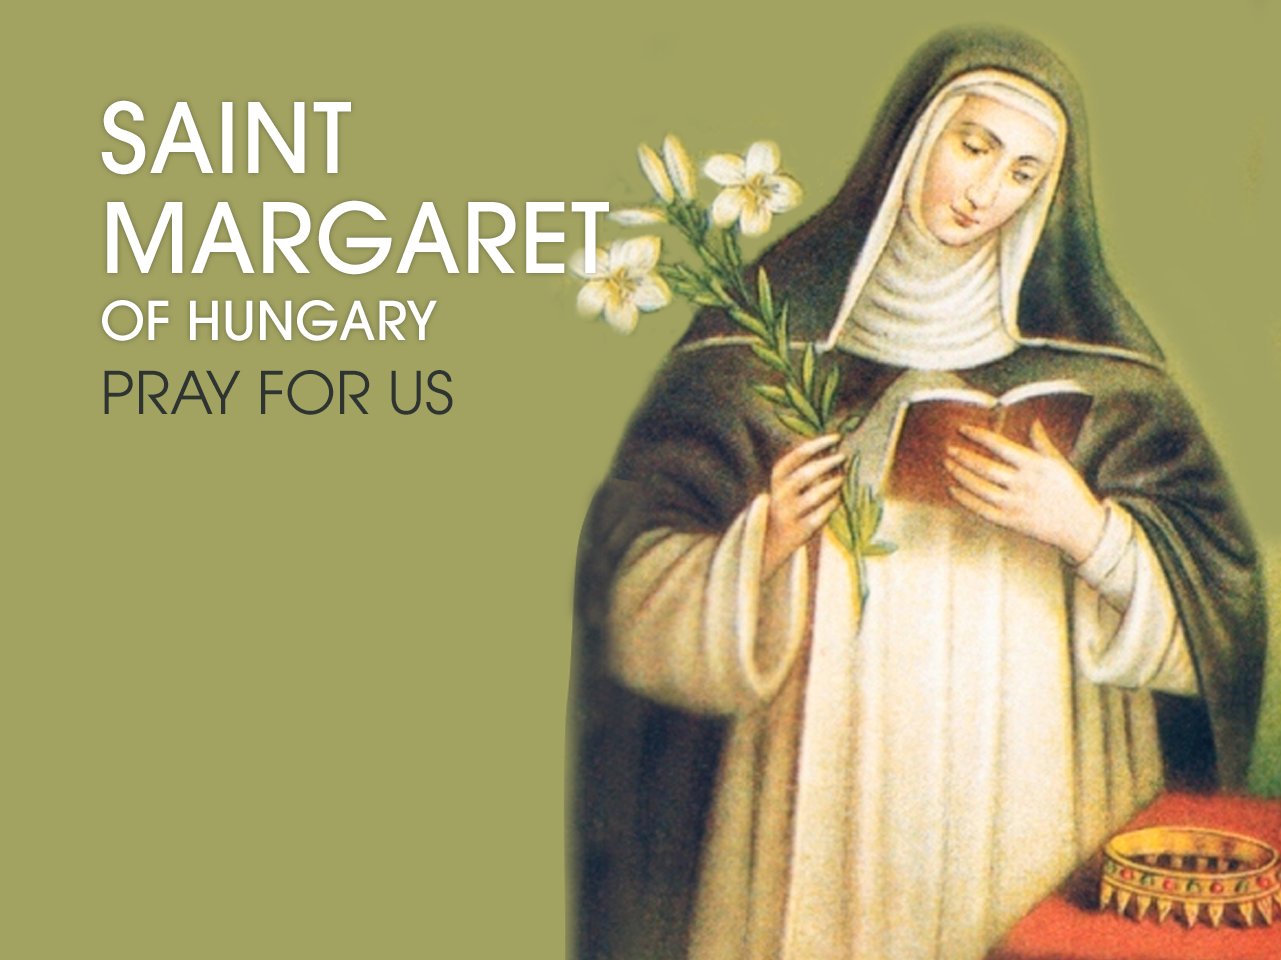 St. Margaret of Hungary